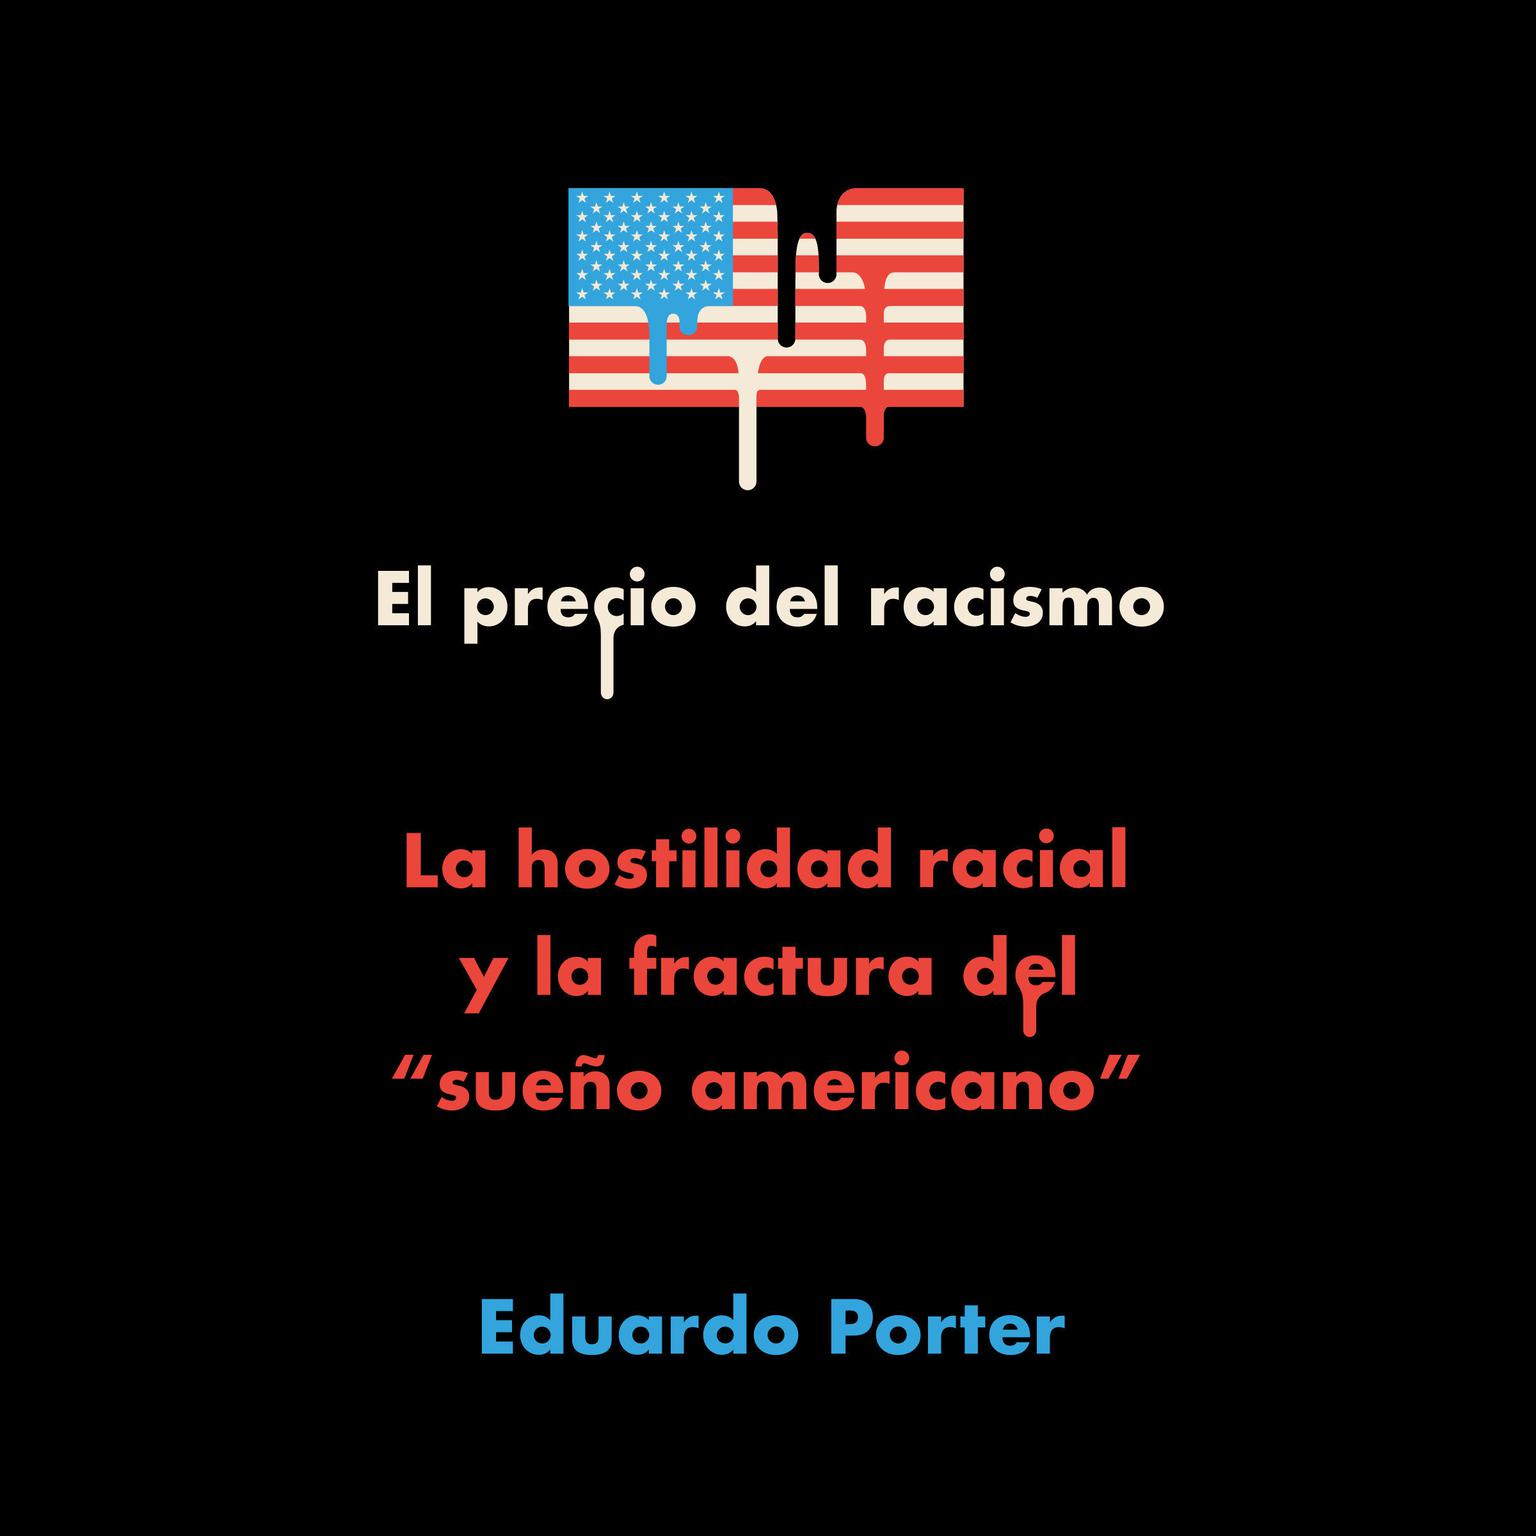 El precio del racismo: La hostilidad racial y la fractura del sueño americano Audiobook, by Eduardo Porter